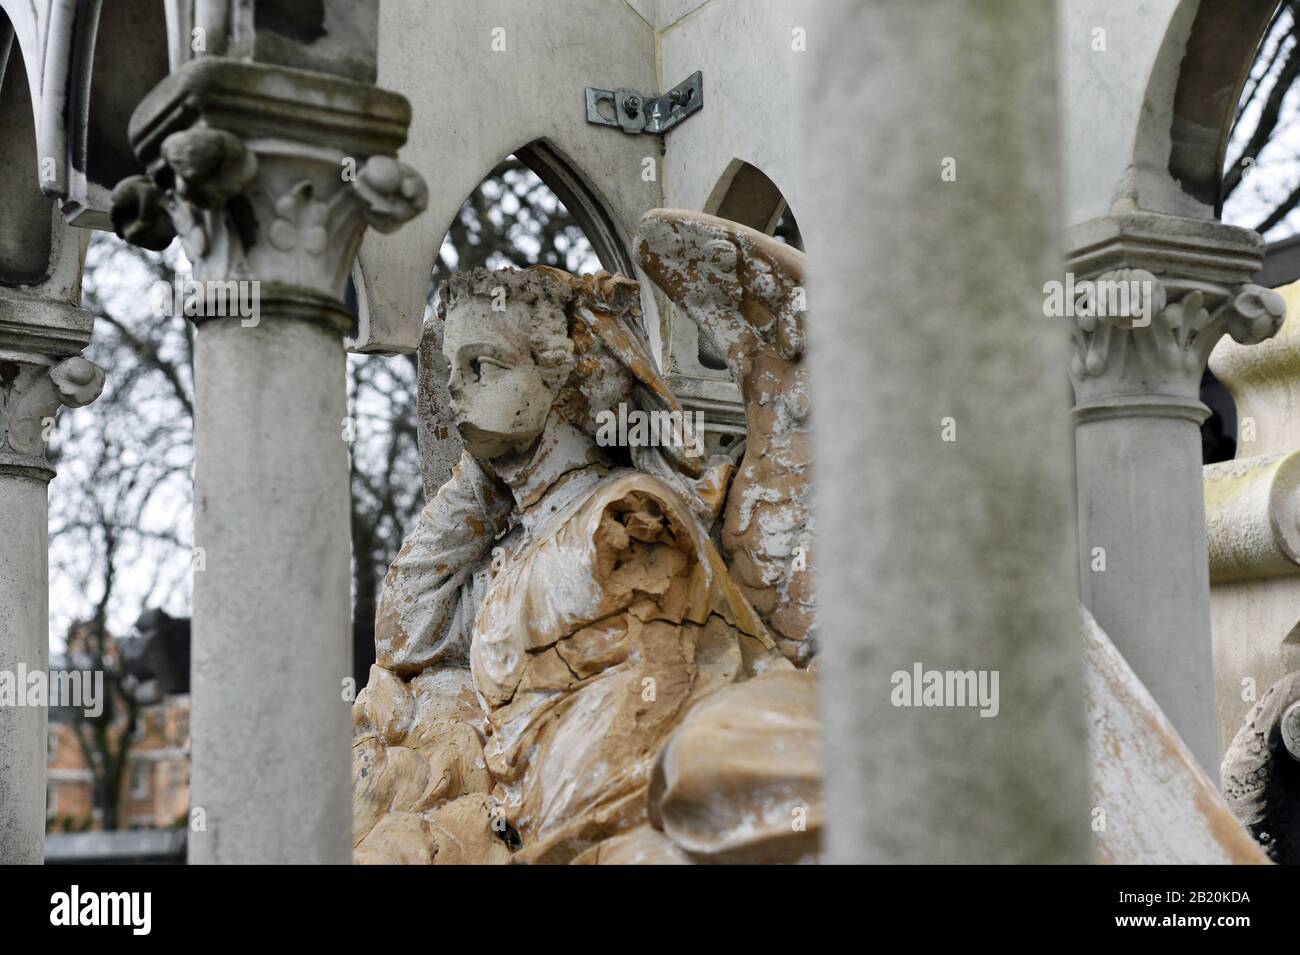 Père Lachaise Cimetery - Paris - France Stock Photo